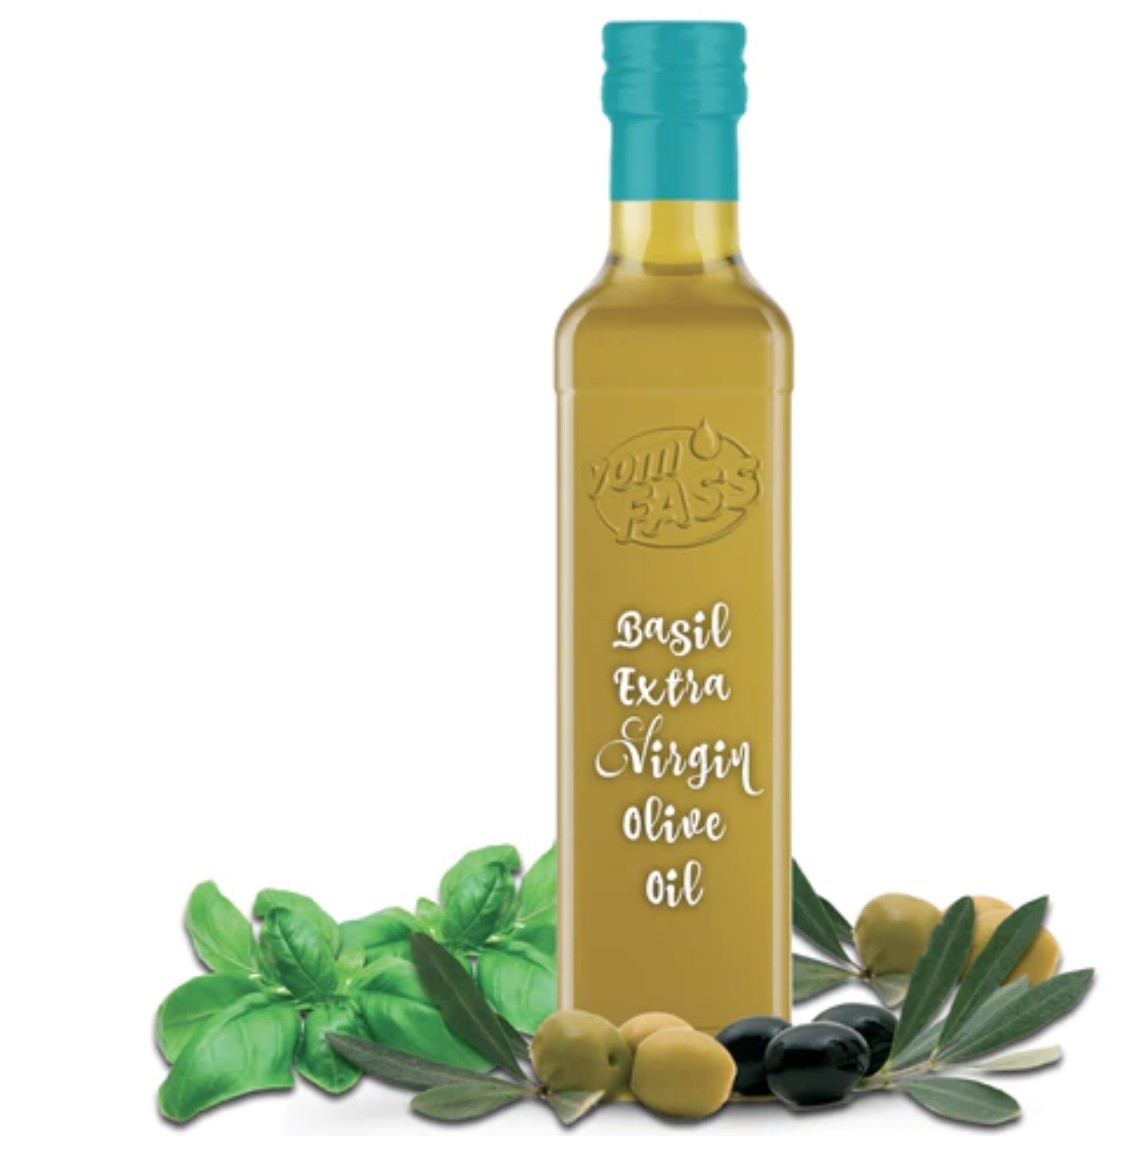 羅勒特級初榨橄欖油 